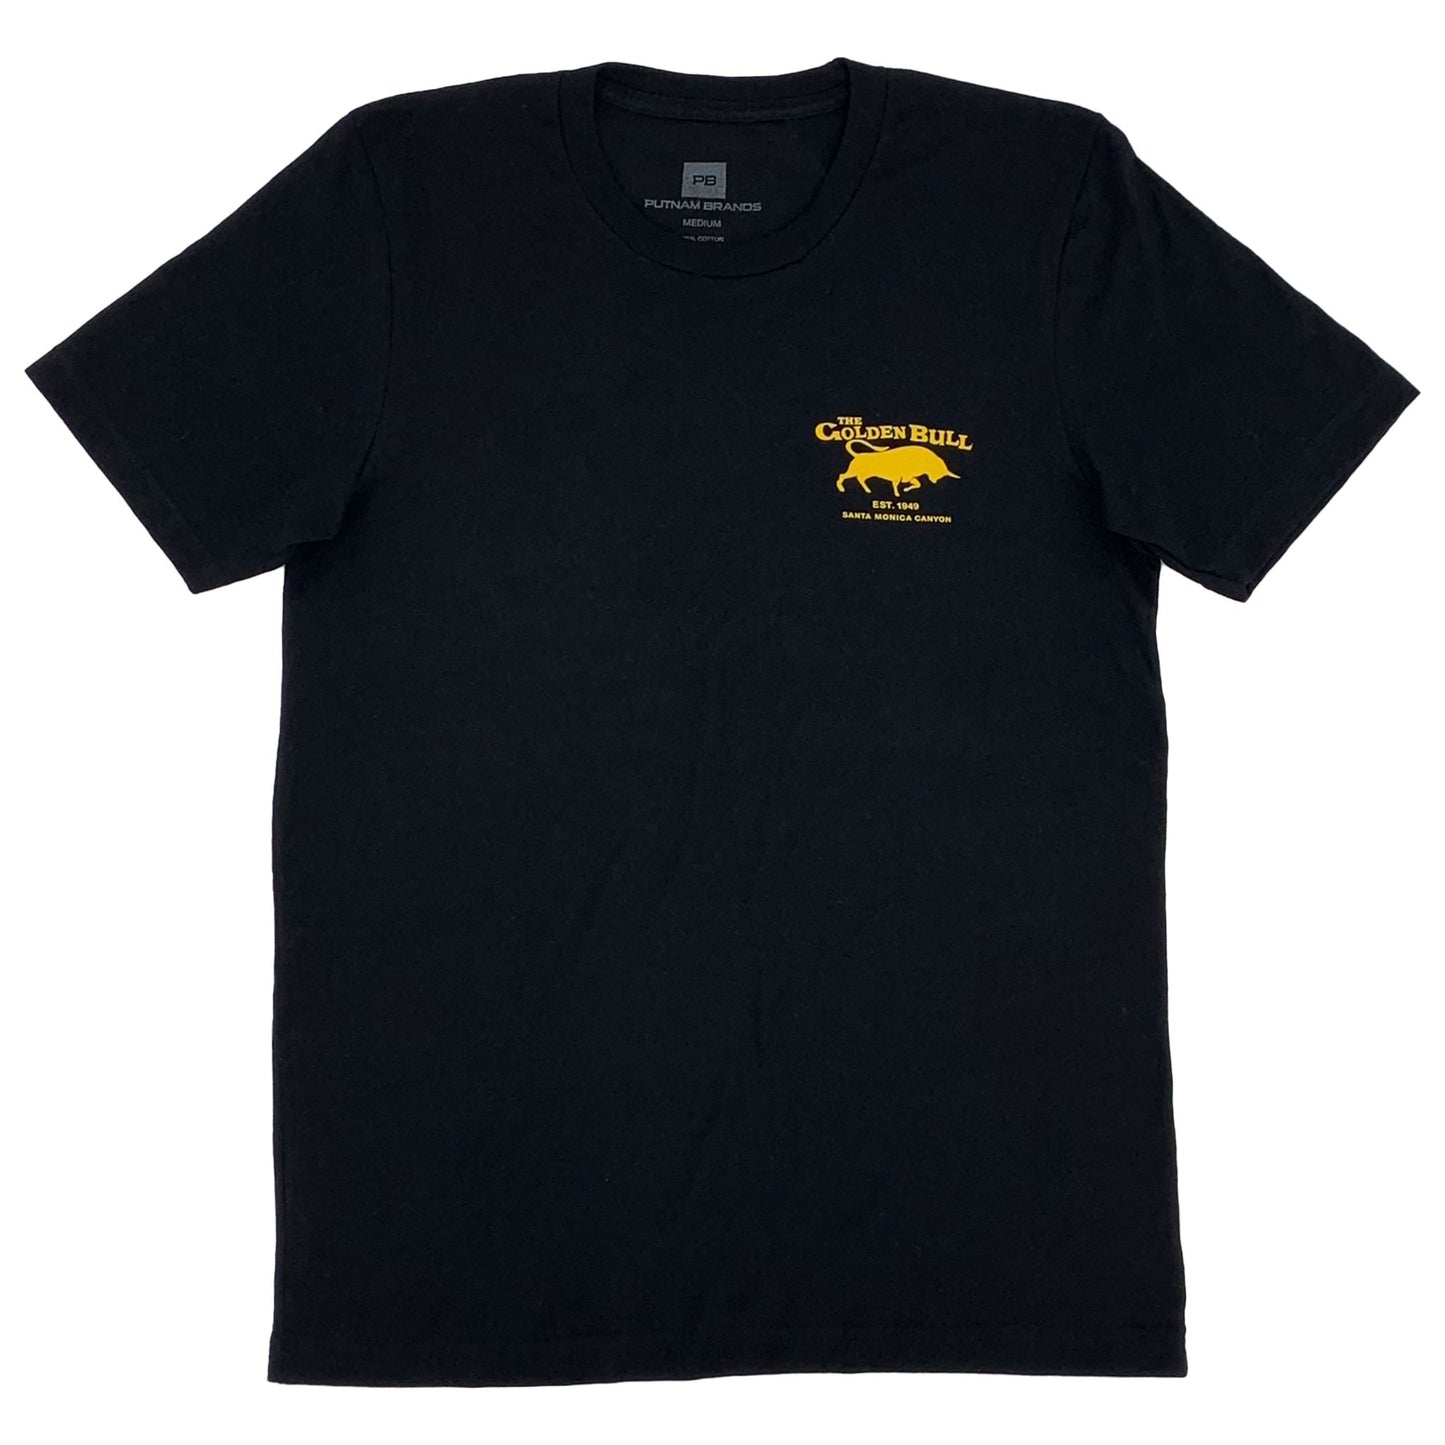 Golden Bull T-Shirt My Store 